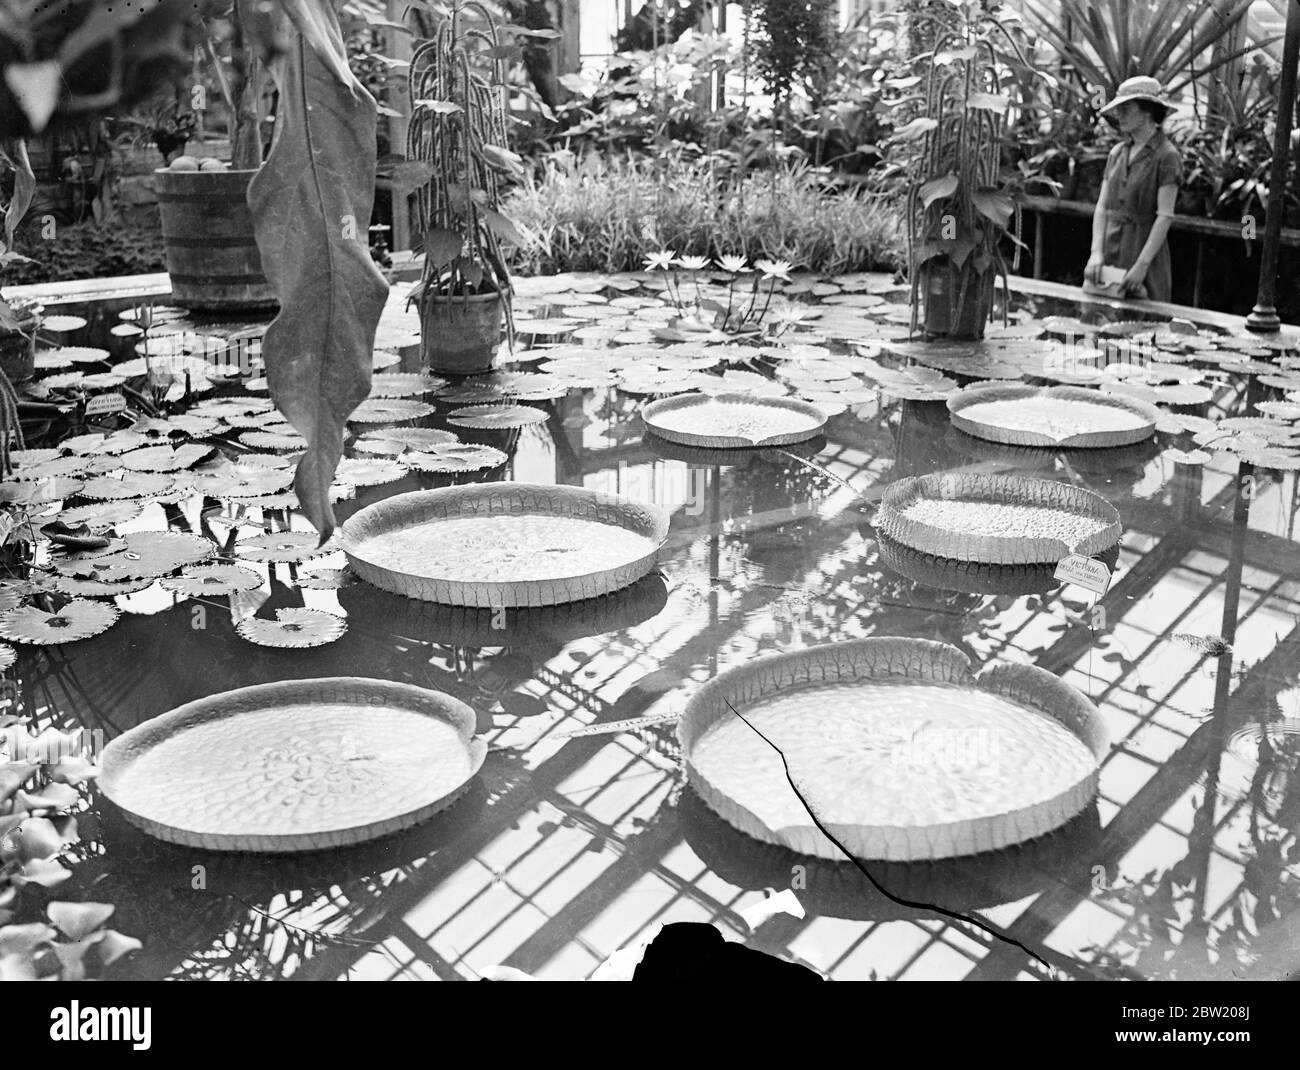 Una nuova varietà di giglio d'acqua gigantesco che raggiunge quel diametro di 1/2 piedi è stato cresciuto per la prima volta nelle case calde Kew Gardens il giglio è conosciuto come la varietà ingannevole del Reggie Victoria. 21 luglio 1937 Foto Stock